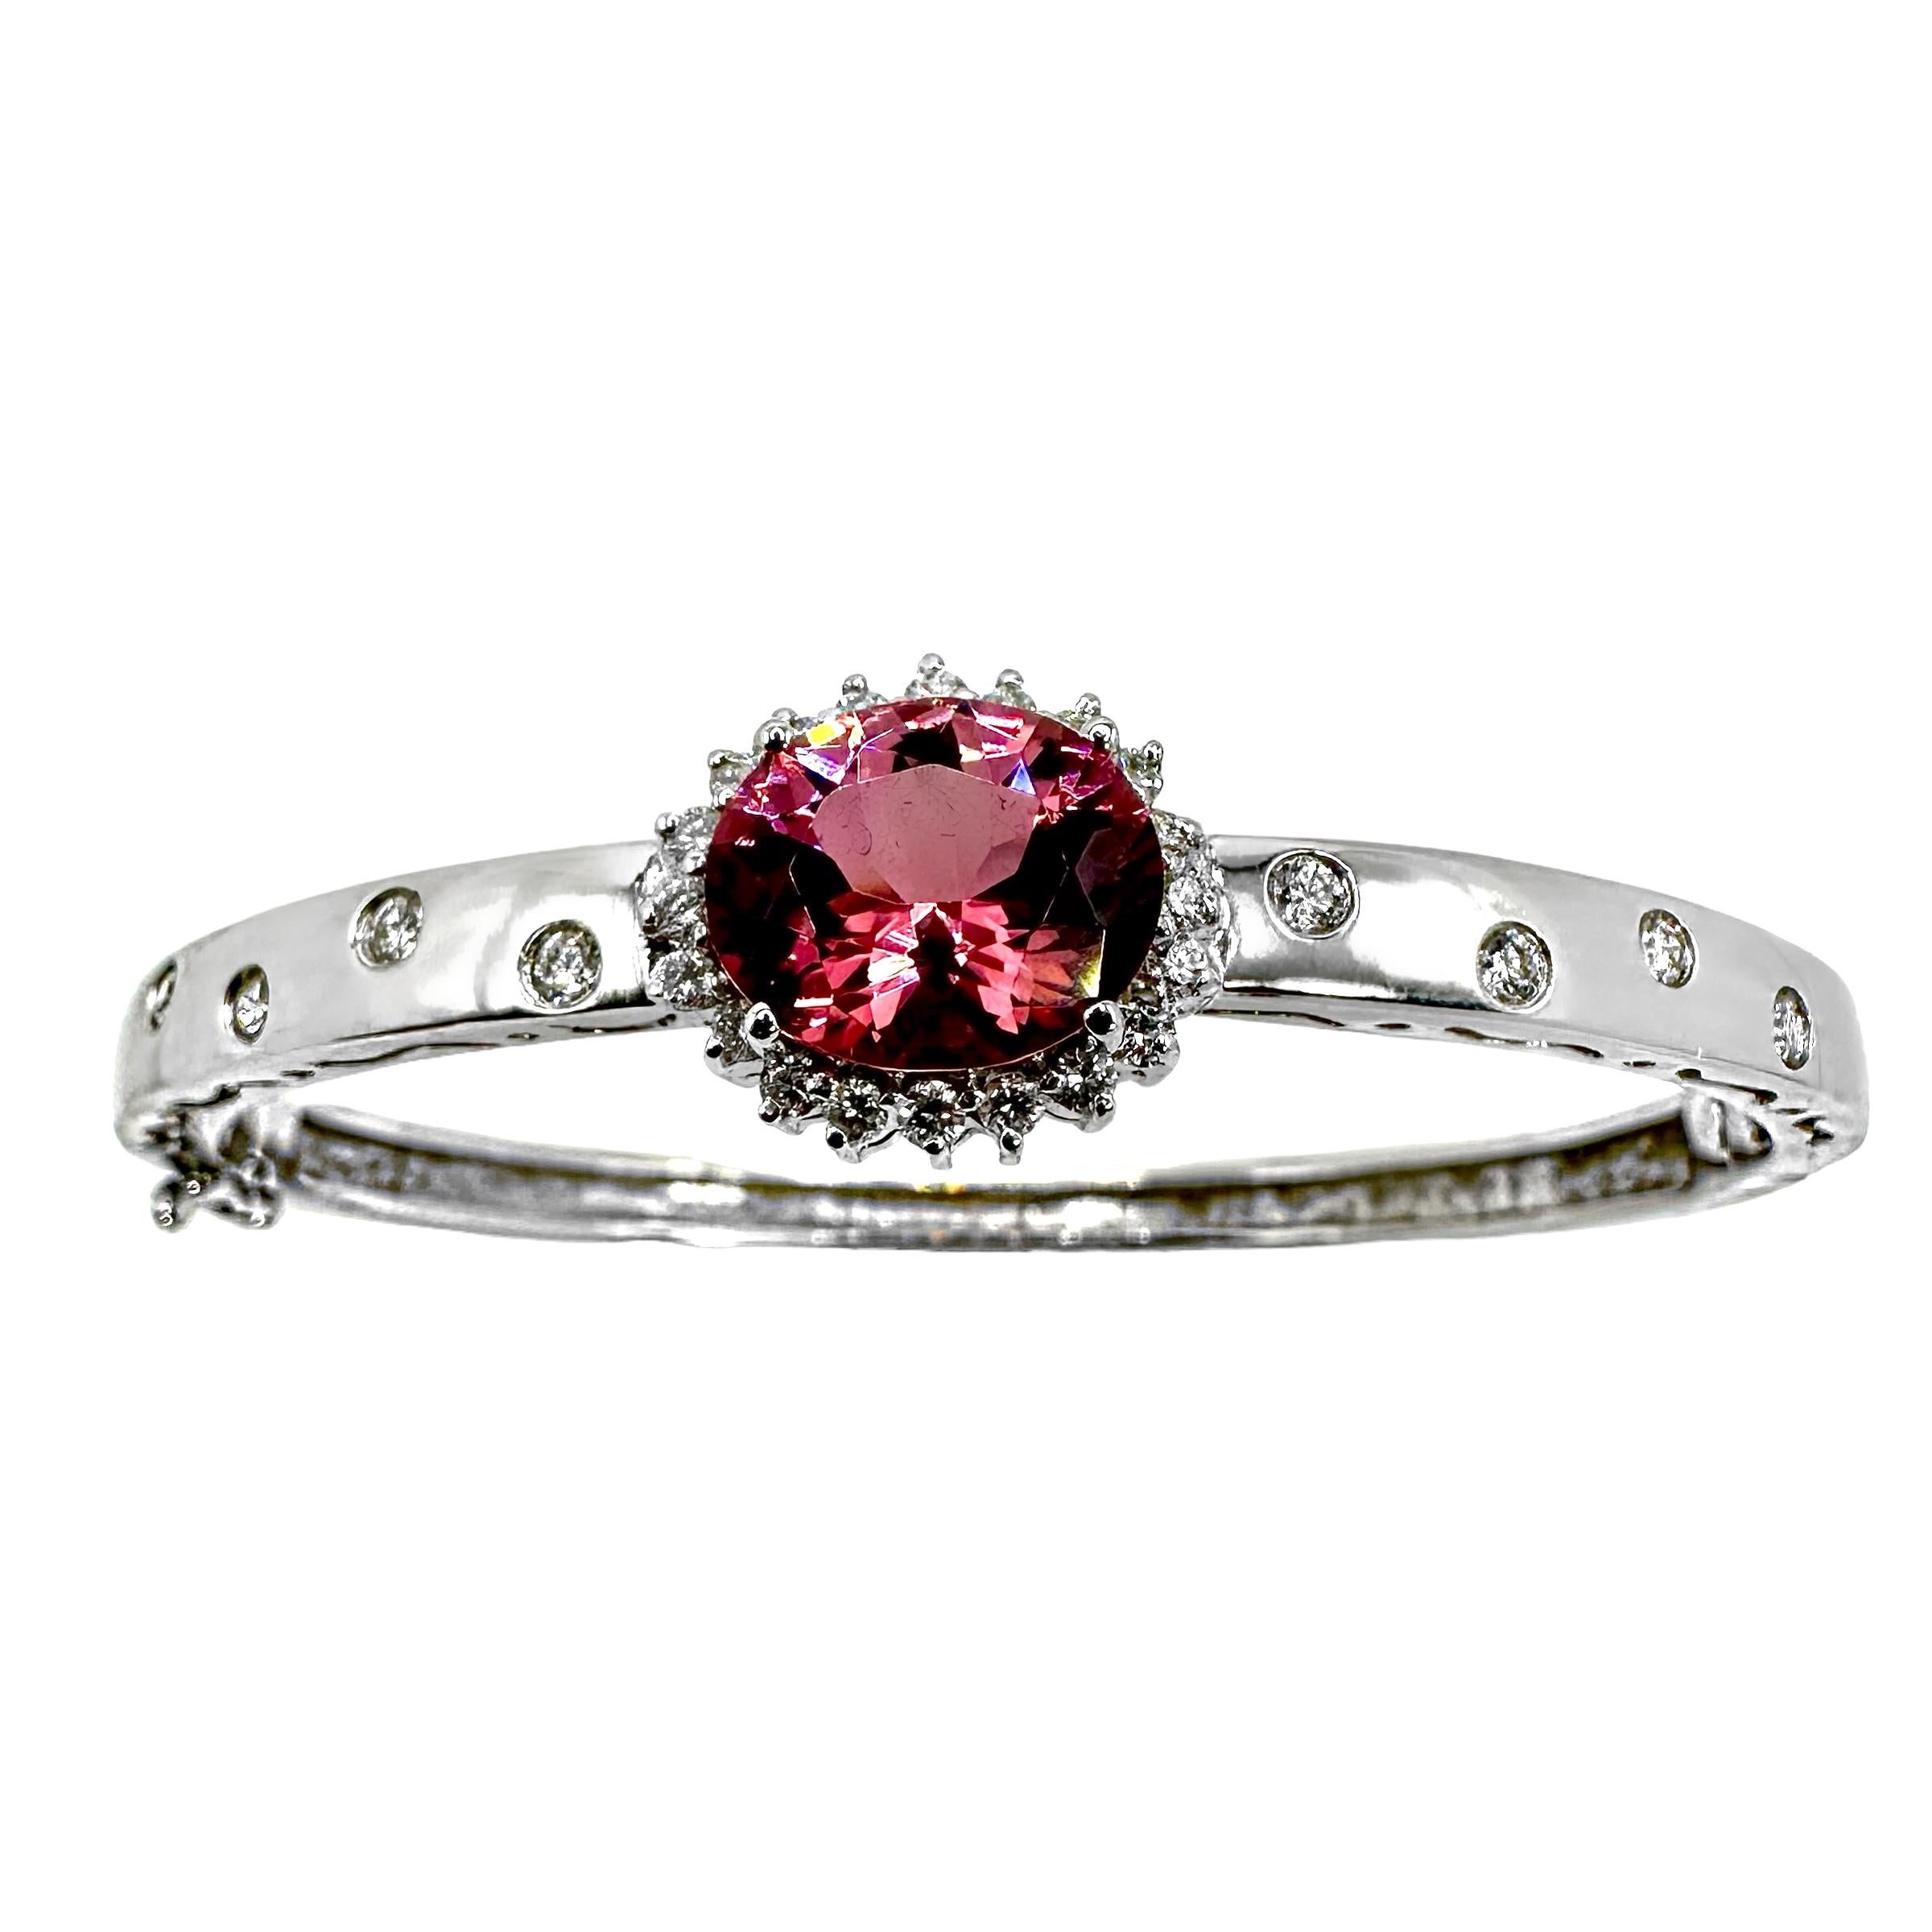 Ravissant bracelet en or blanc 18 carats orné d'une tourmaline rose vibrante de forme ovale entourée de diamants dans une monture de style halo au centre. De plus, chaque épaule de ce bracelet est brunie avec 4 diamants insérés. Le haut et le bas du